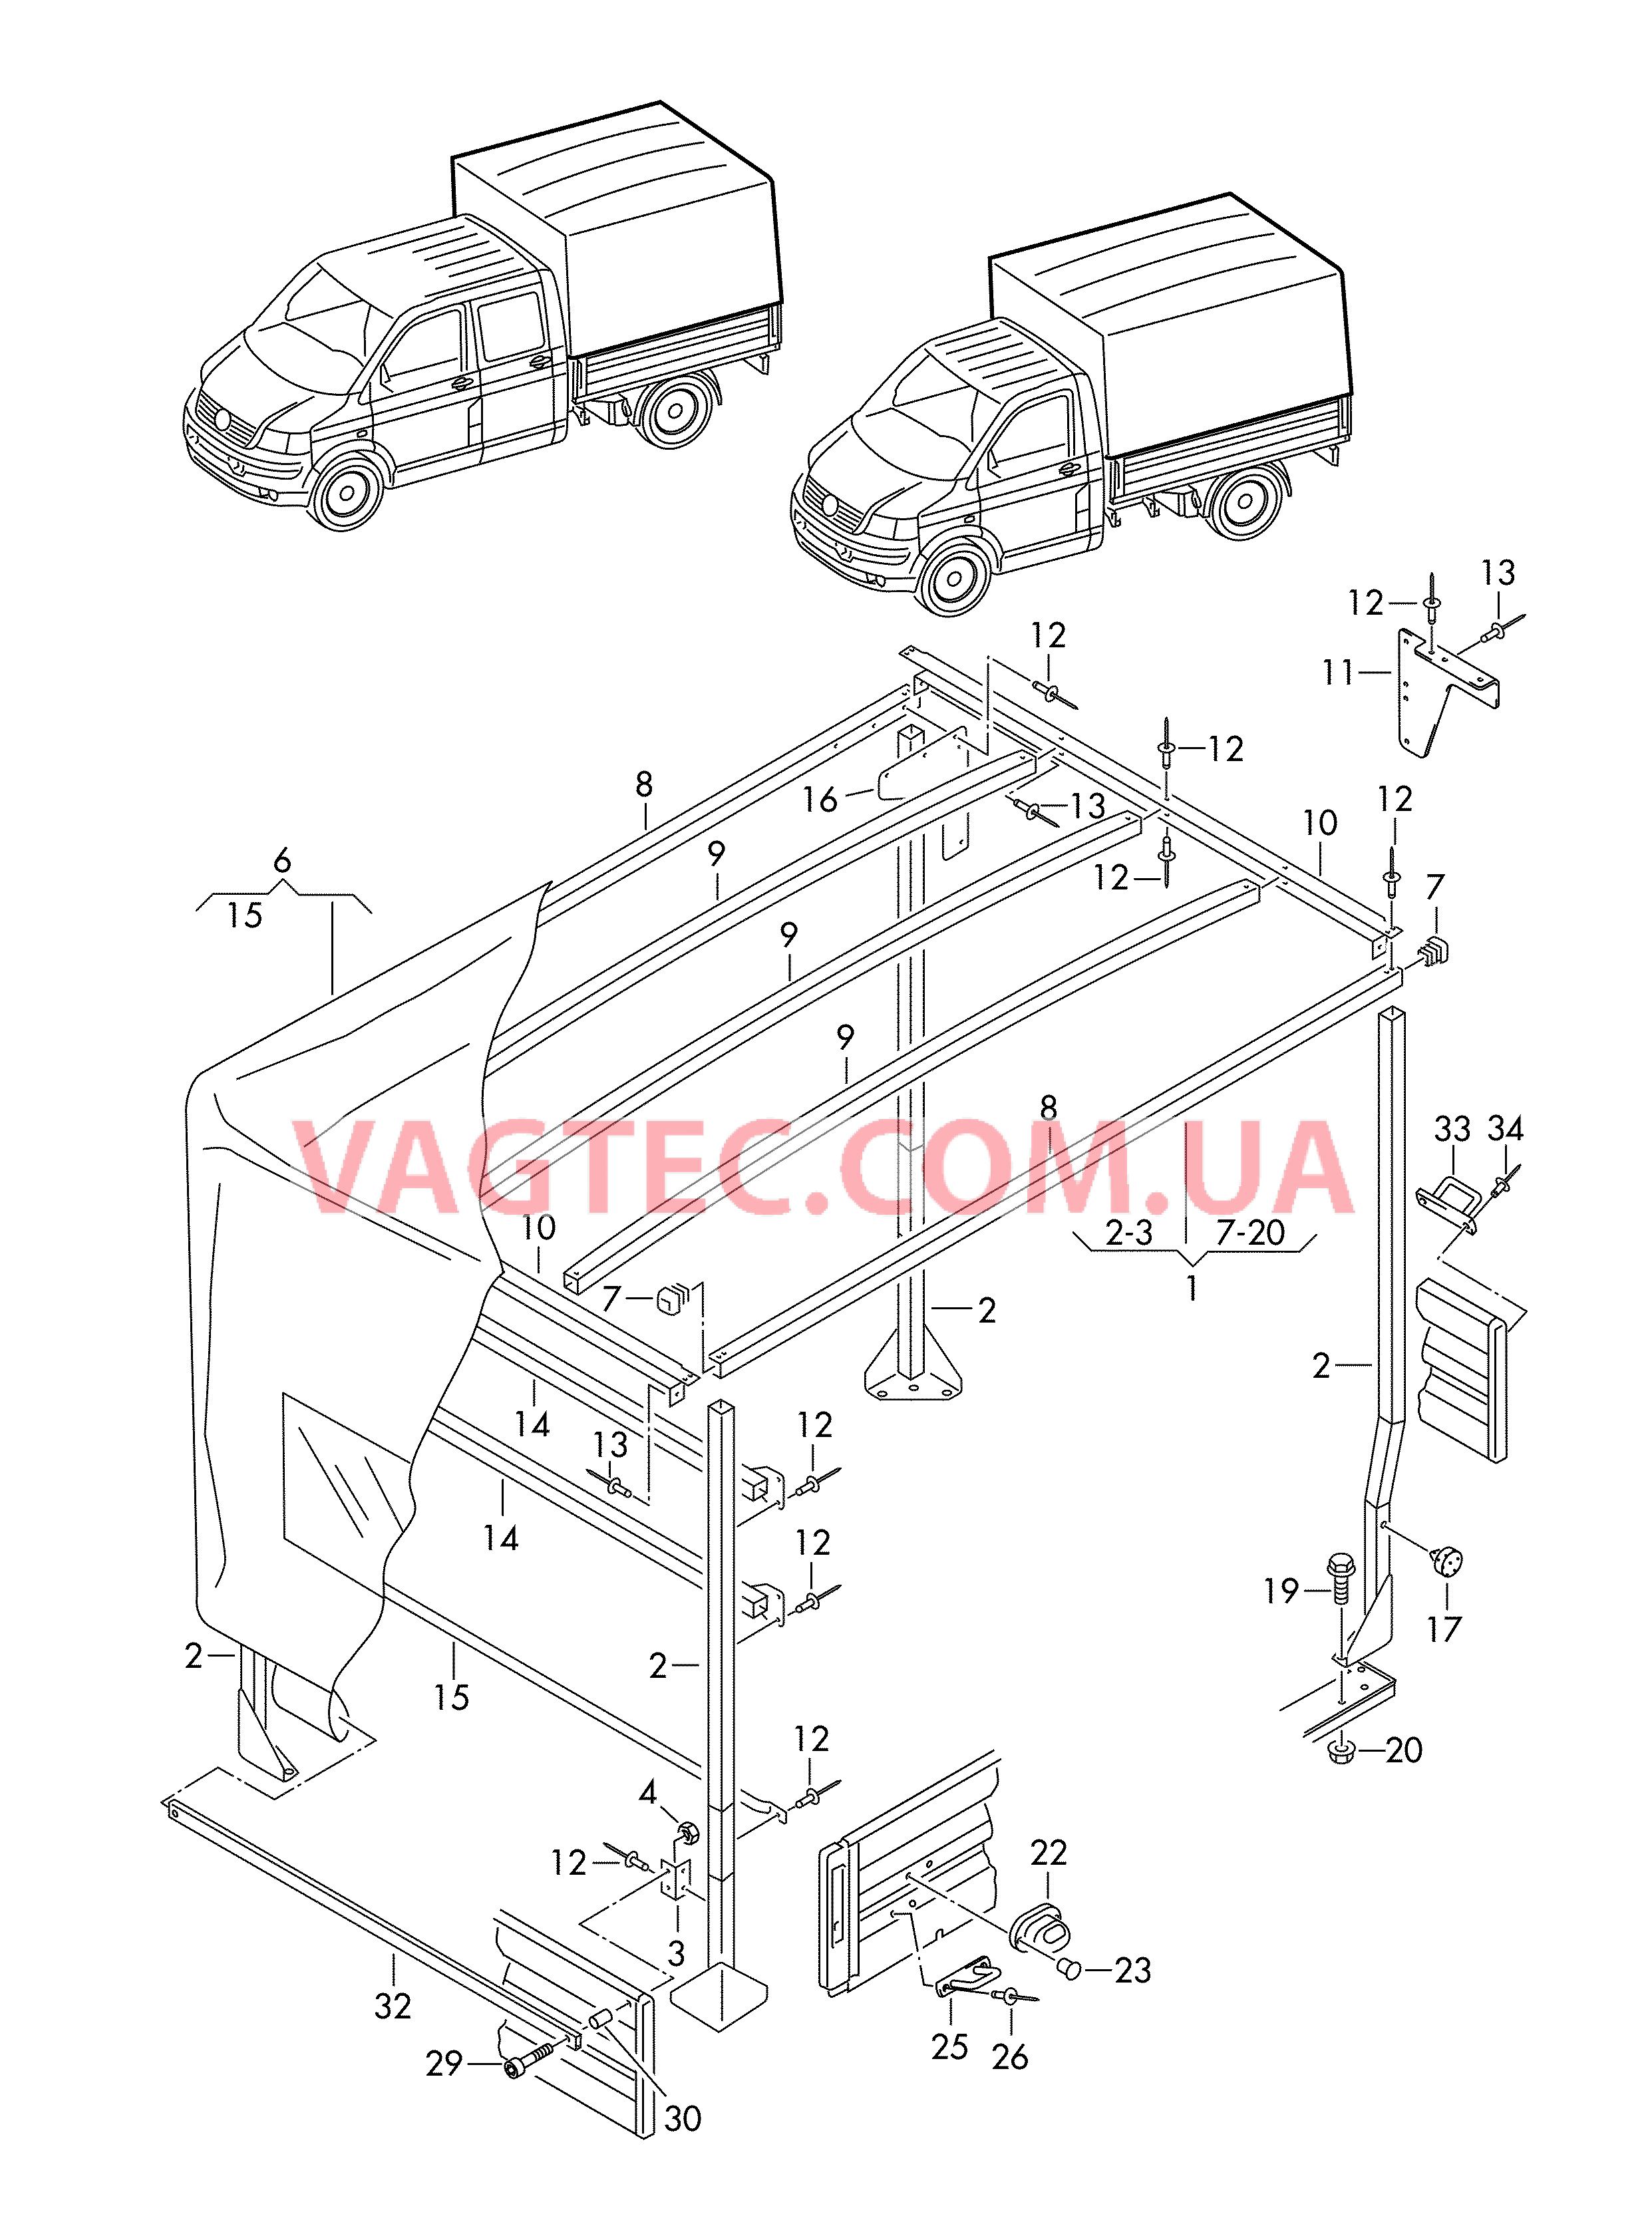 Каркас складной крыши с тентом и деталями крепления  для VOLKSWAGEN Transporter 2004-2